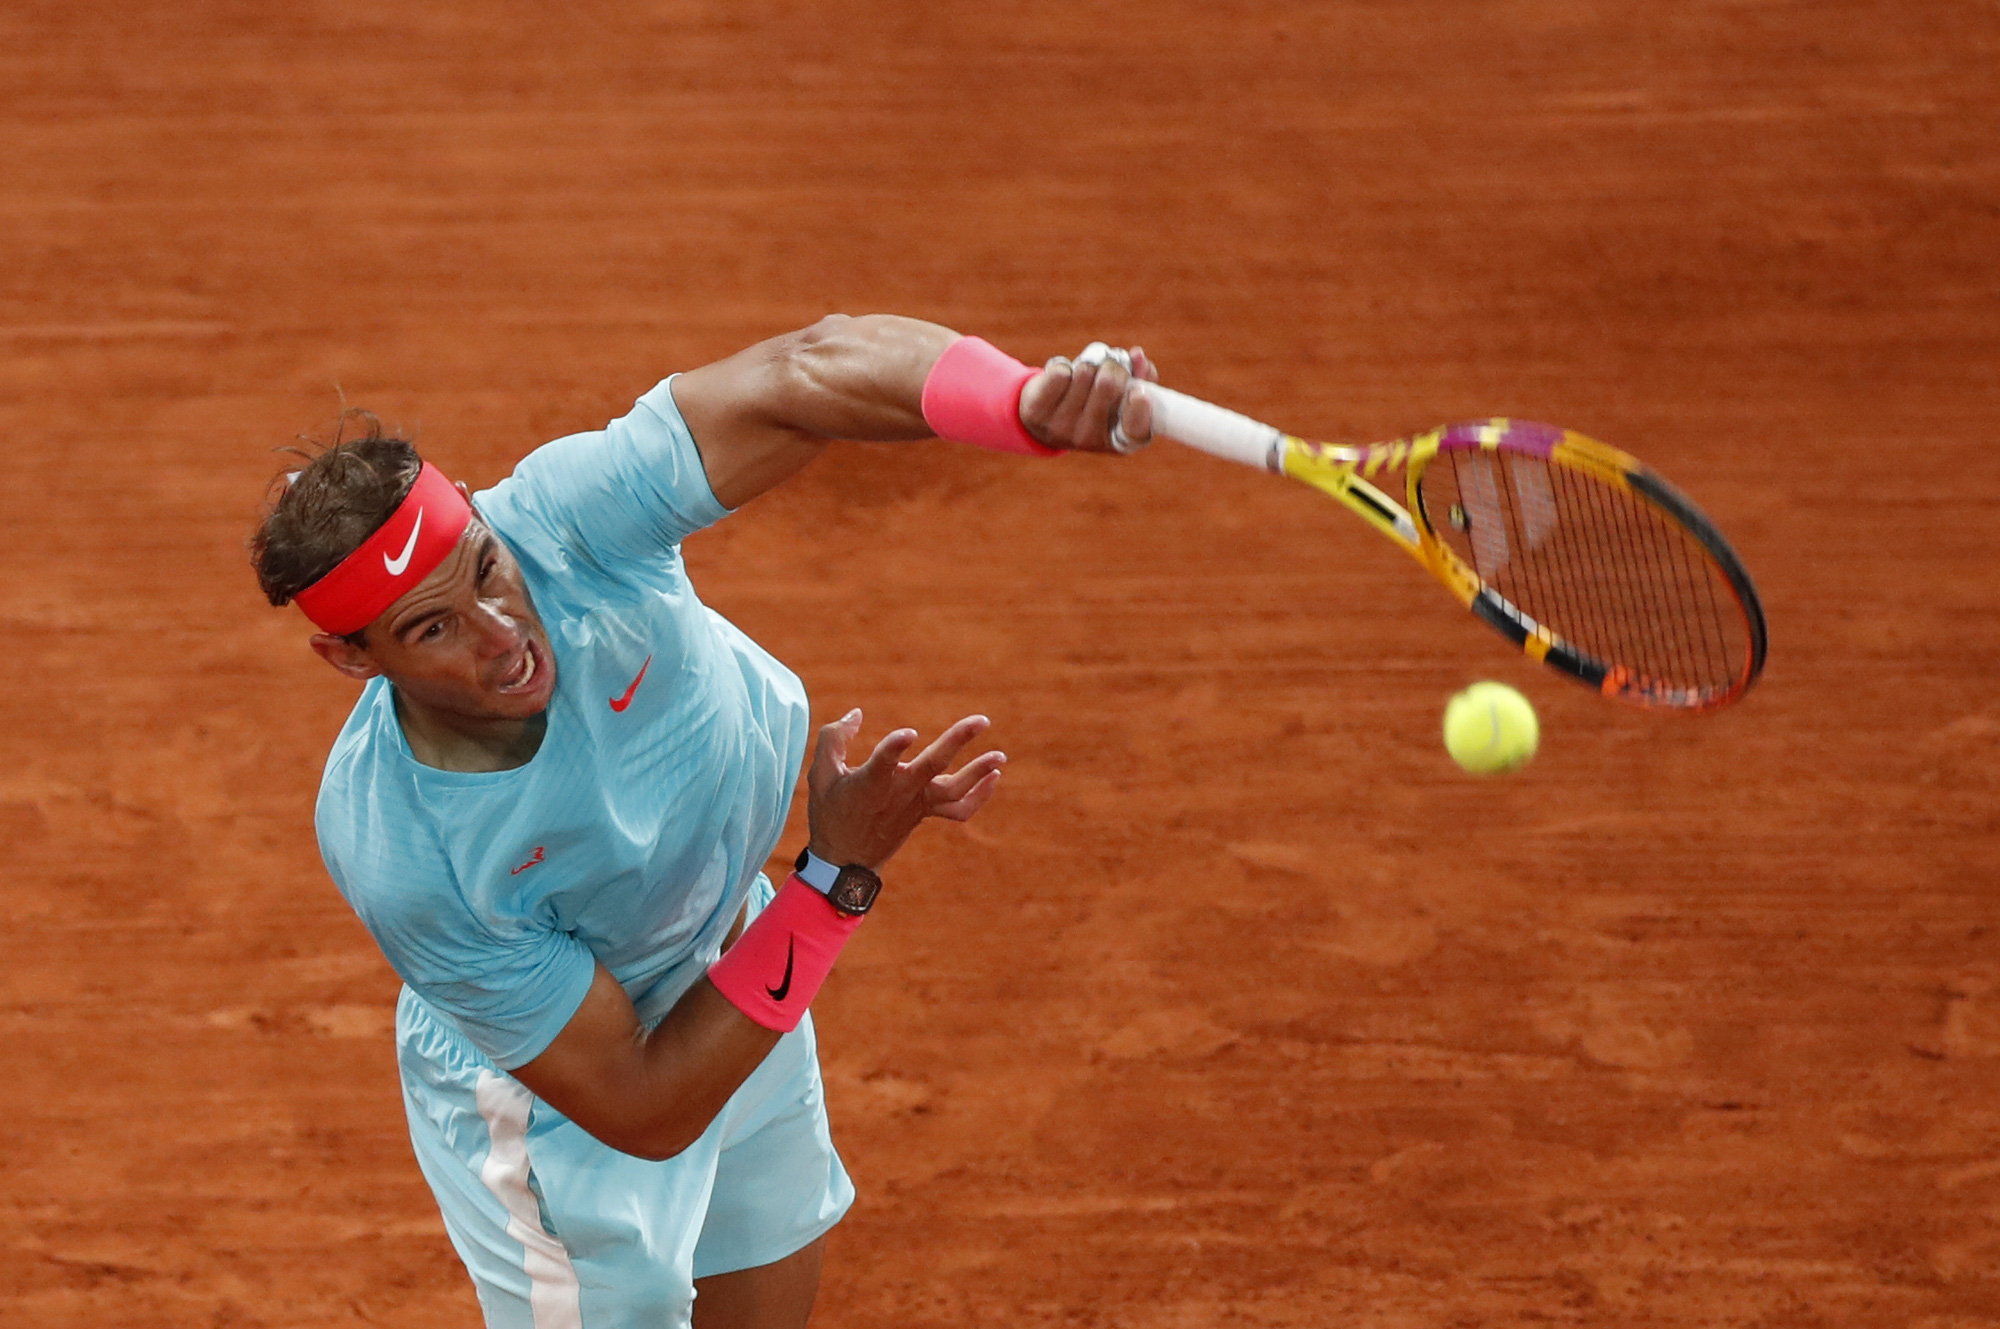 Vô địch Roland Garros 2020, Nadal san bằng kỷ lục Grand Slam của Federer - Ảnh 1.